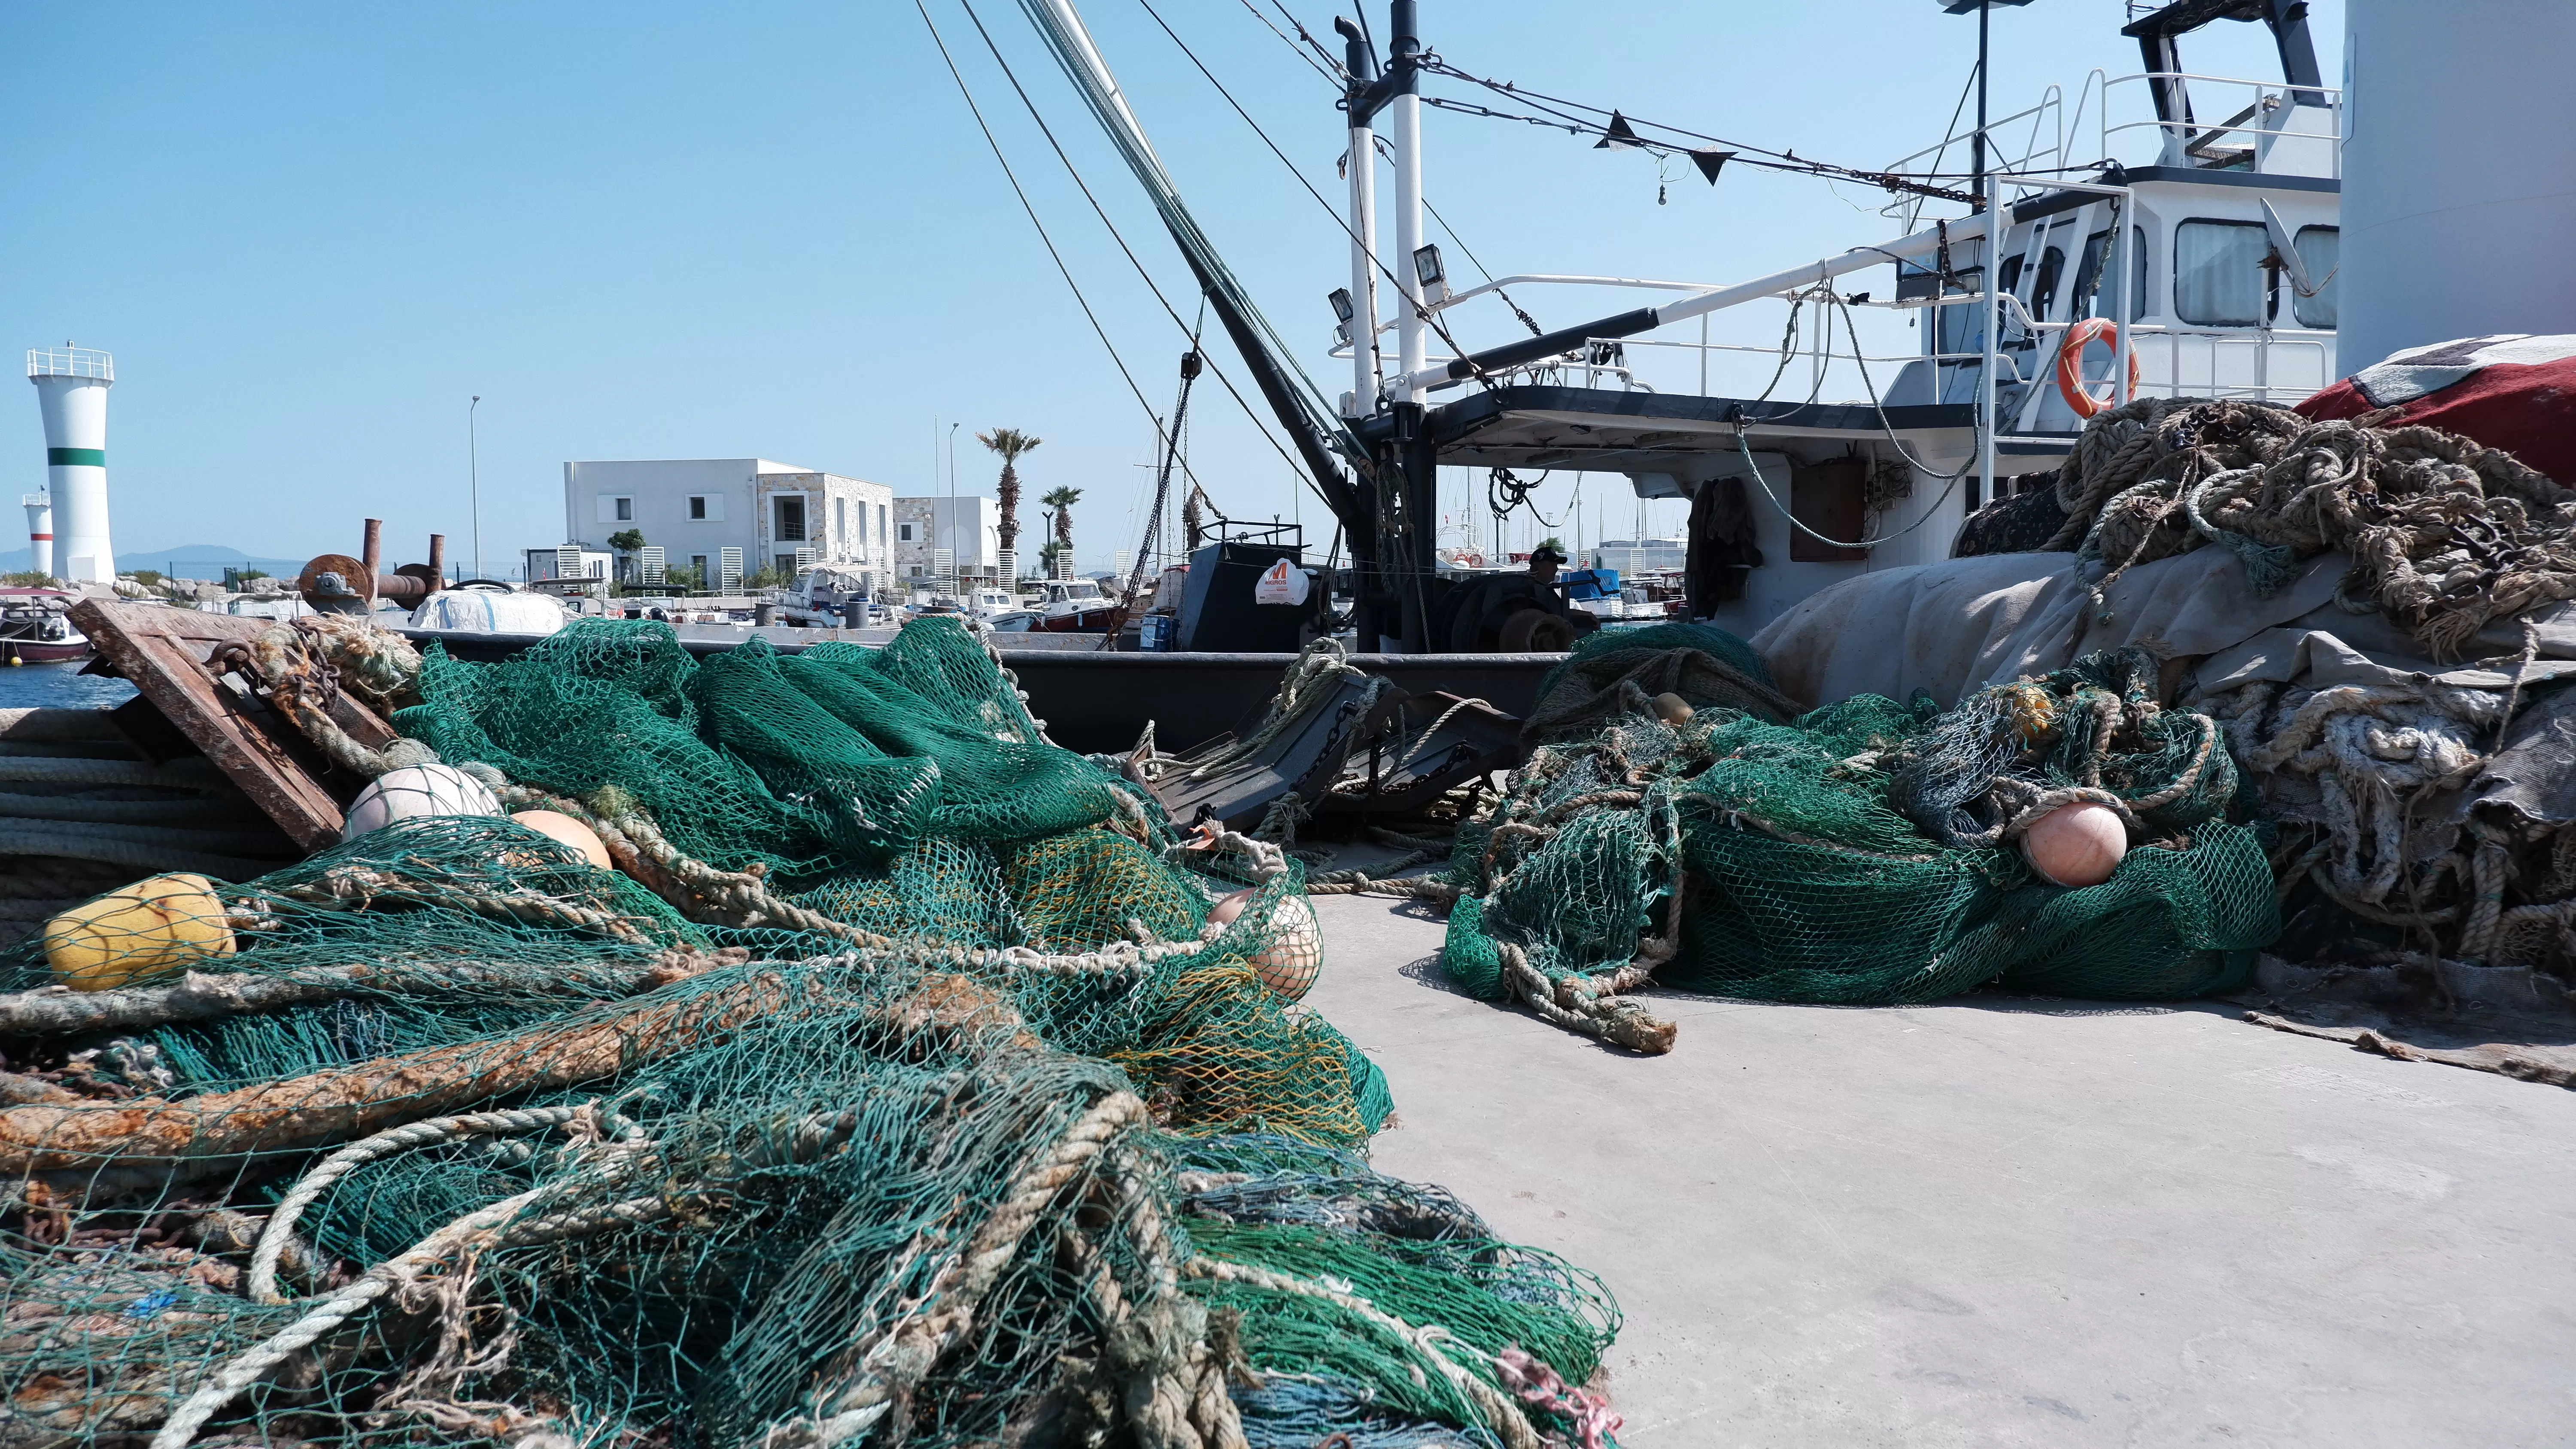  Ege ‘de, 1 Eylül tarihinde bitecek olan av yasaklarının kalkmasını umutla bekleyen balıkçılar, balık avı sezonu öncesi teknelerin bakımlarını yapıyorlar.